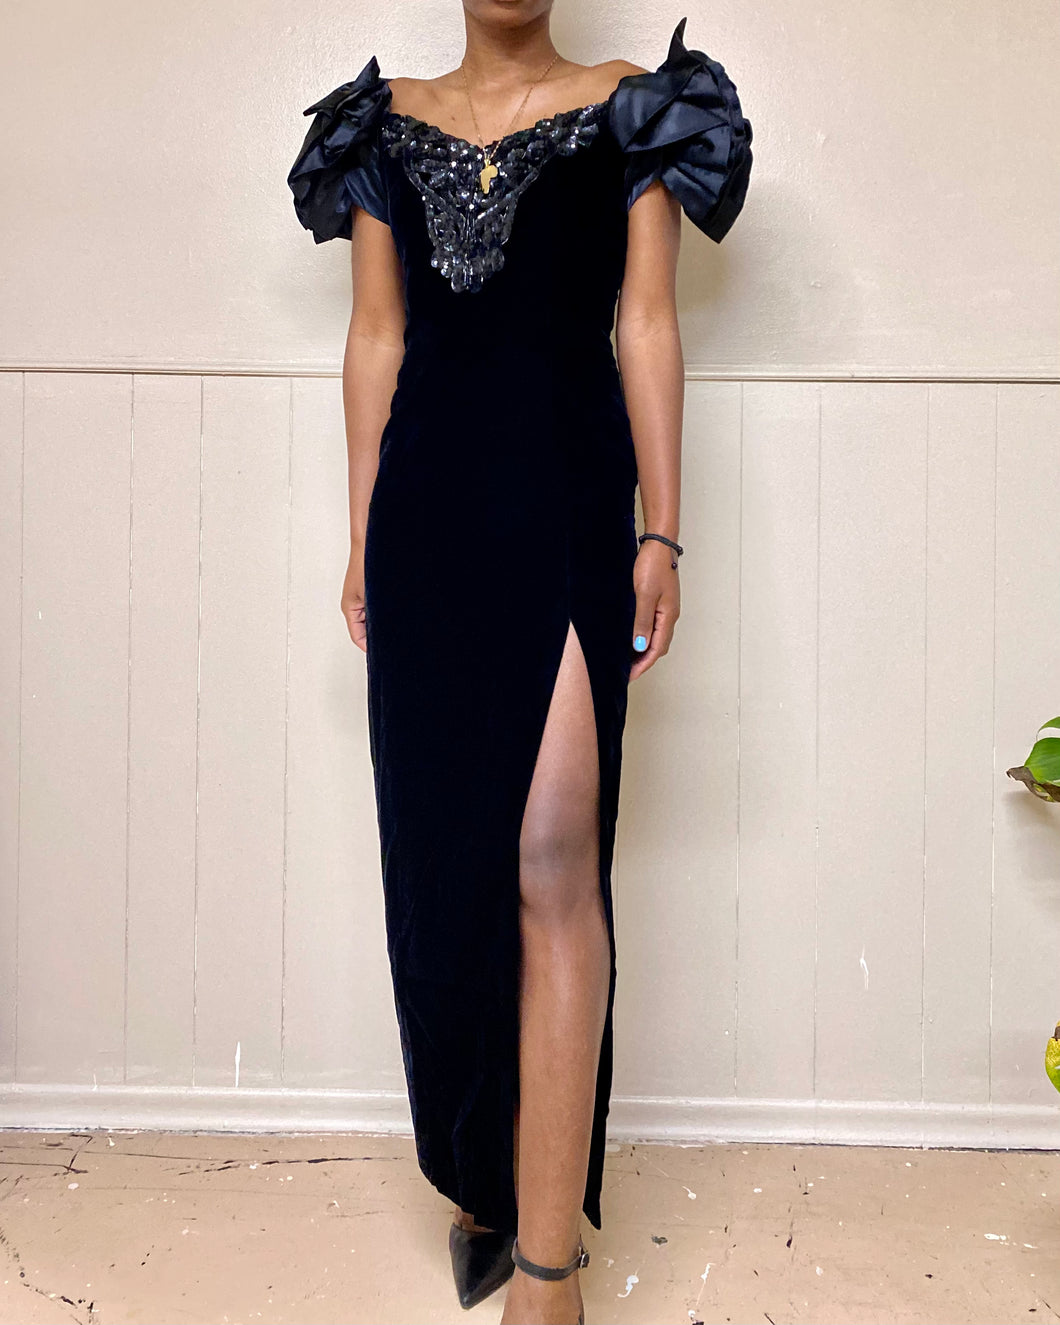 Vintage Embellished Thigh Slit Black Cocktail Gown Dress(M)